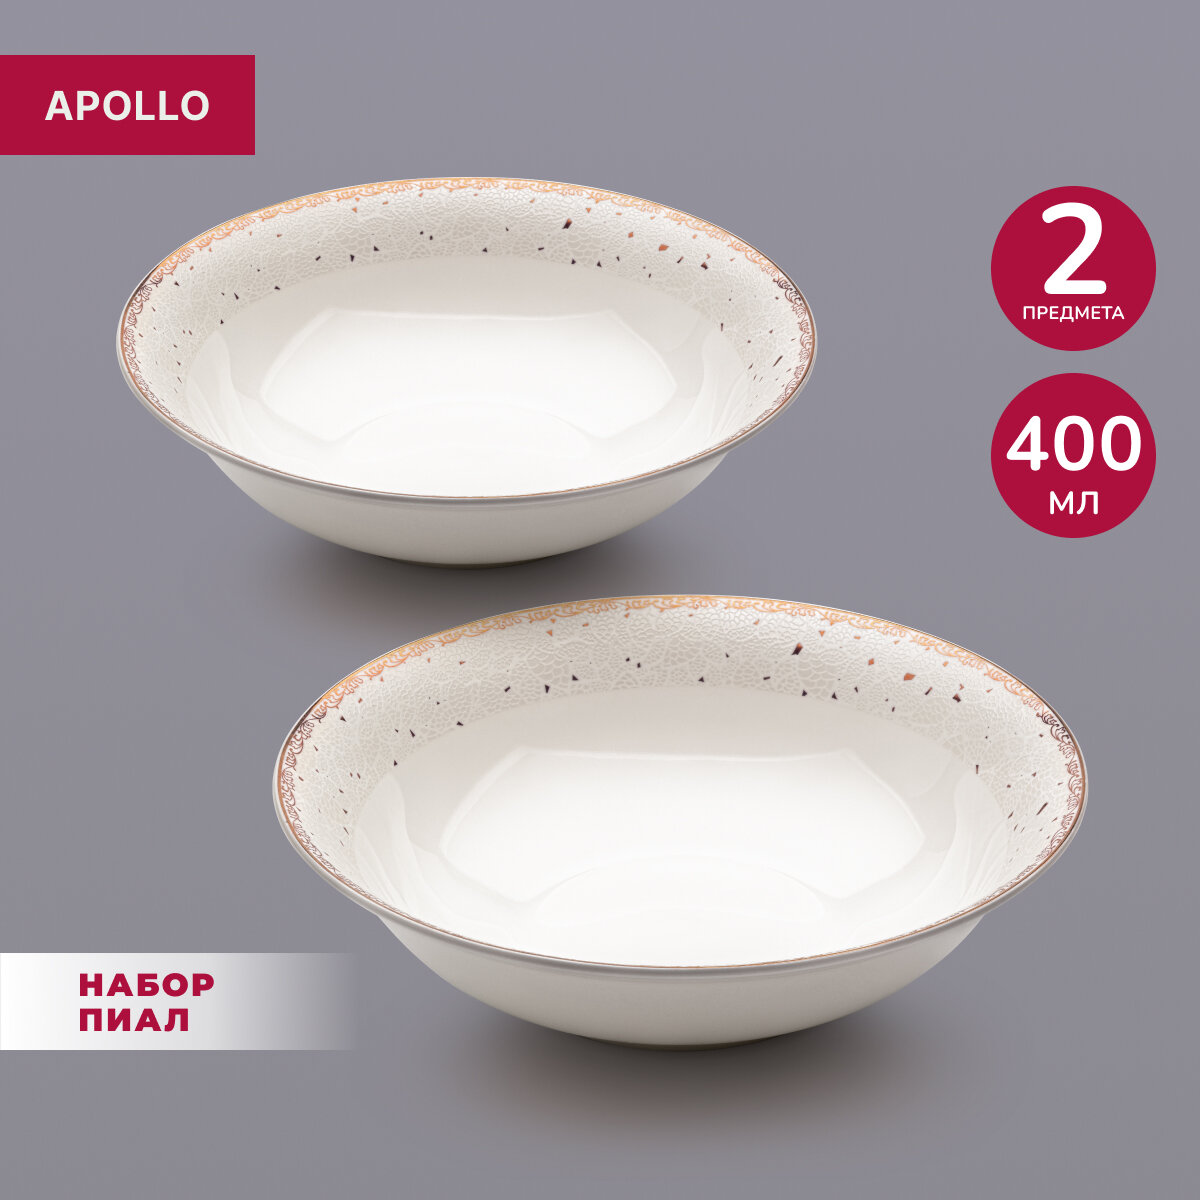 Тарелка глубокая суповая фарфоровая, тарелки набор 2 предмета, салатник для сервировки Apollo "Unpoko", диаметр 16 см, 400 мл